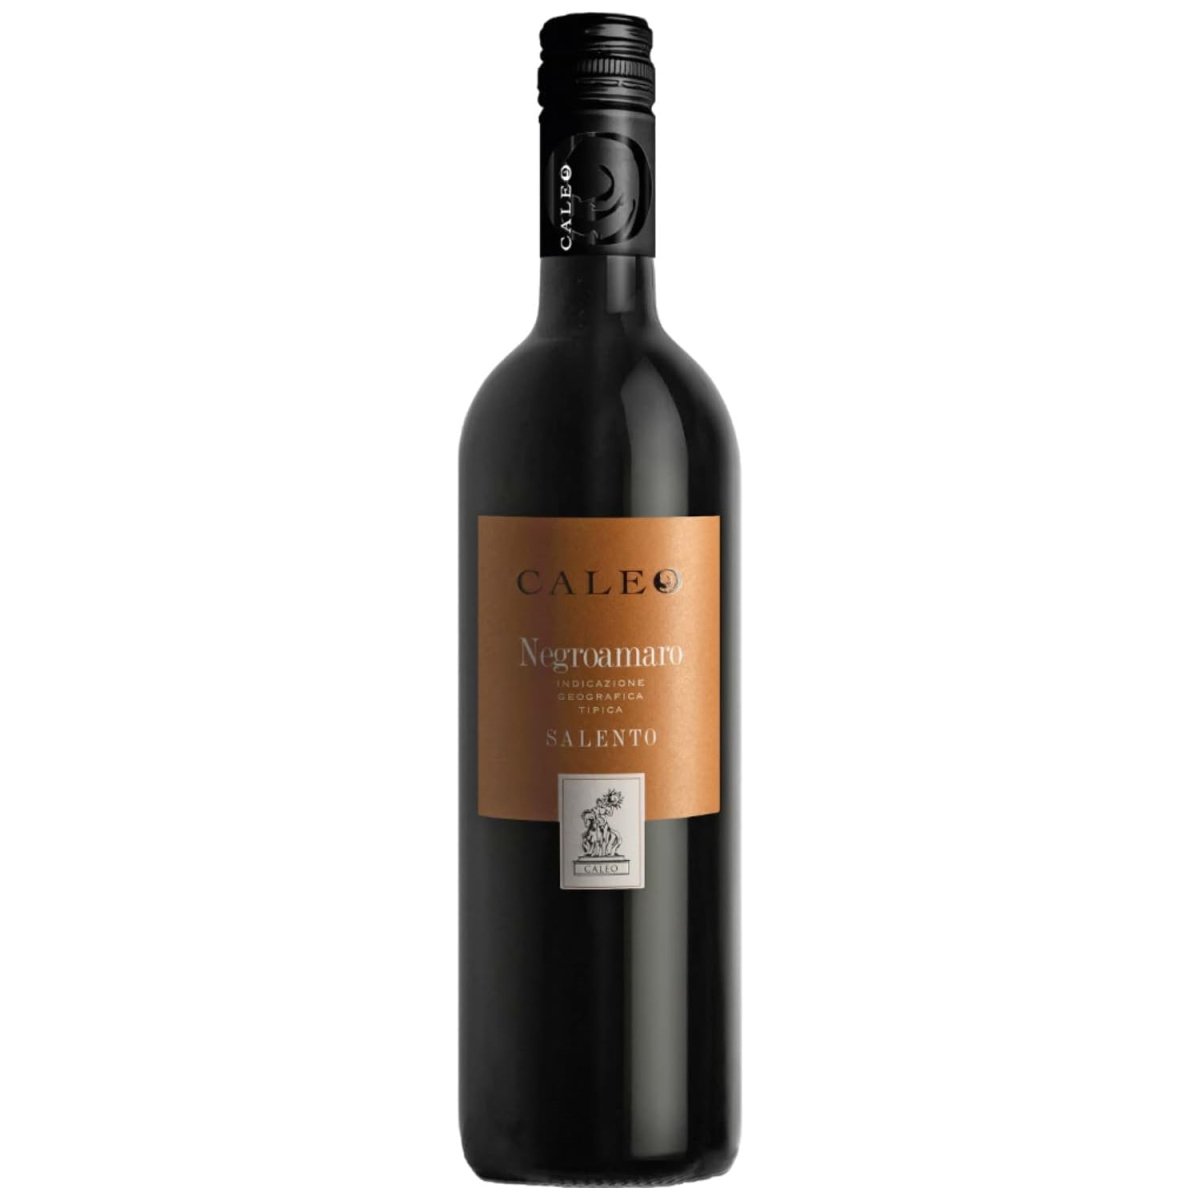 Negroamaro Caleo Salento IGT Rotwein Wein trocken Italien (12 x 0,75l) - Versanel -